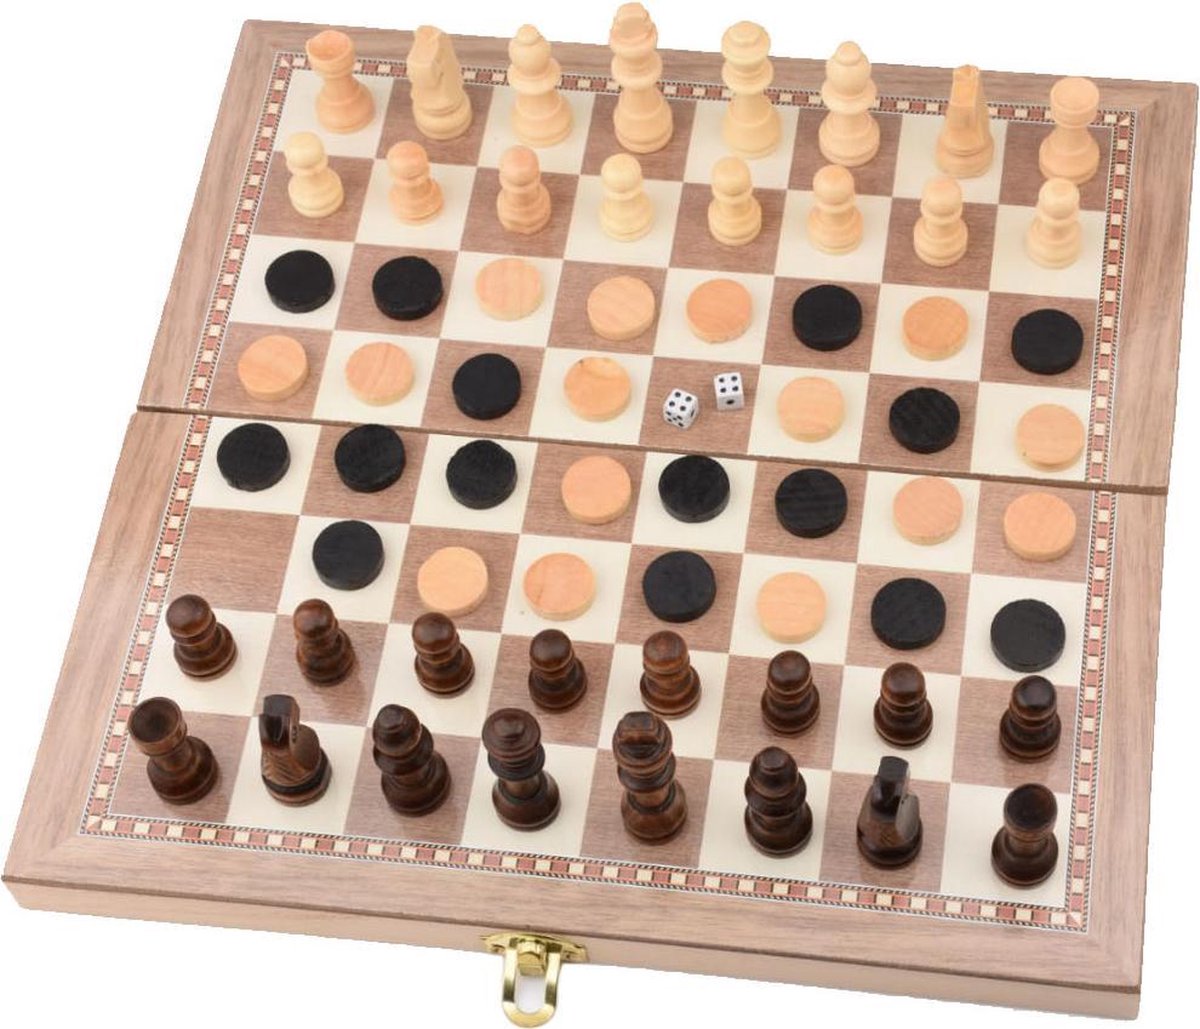 Schaakbord | Dambord | Backgammon | Schaakspel | Schaakset | Schaken | Dammen | Met Schaakstukken | 3-in-1 Bordspel | Chess | Hout | Opklapbaar | 39 x 39 cm